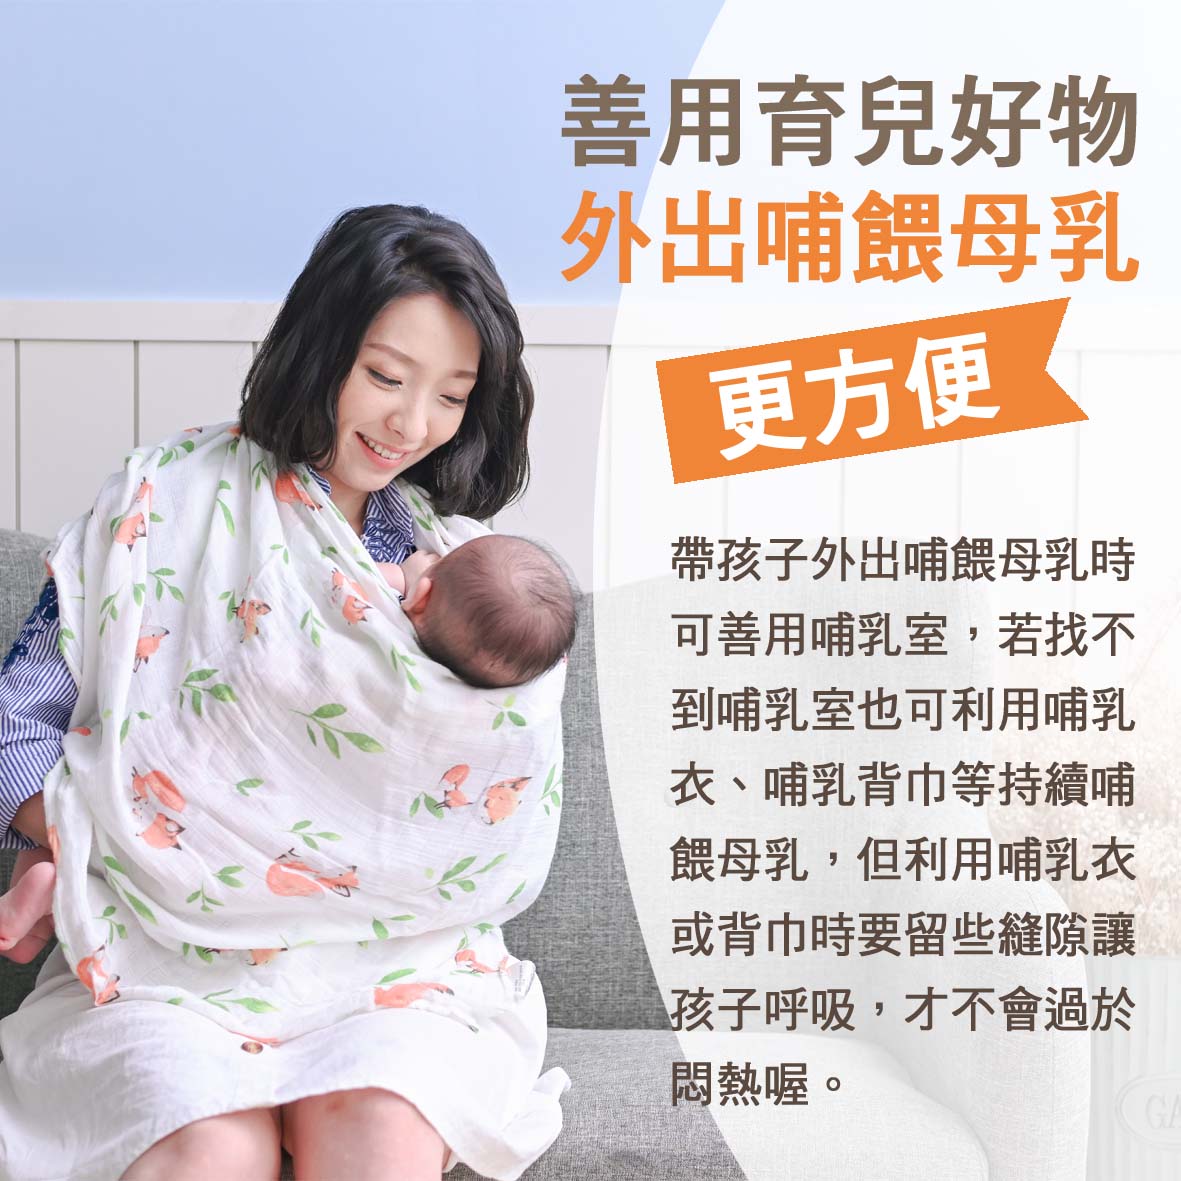 寶寶篇第13週-善用育兒好物 外出哺餵母乳更方便文章照片